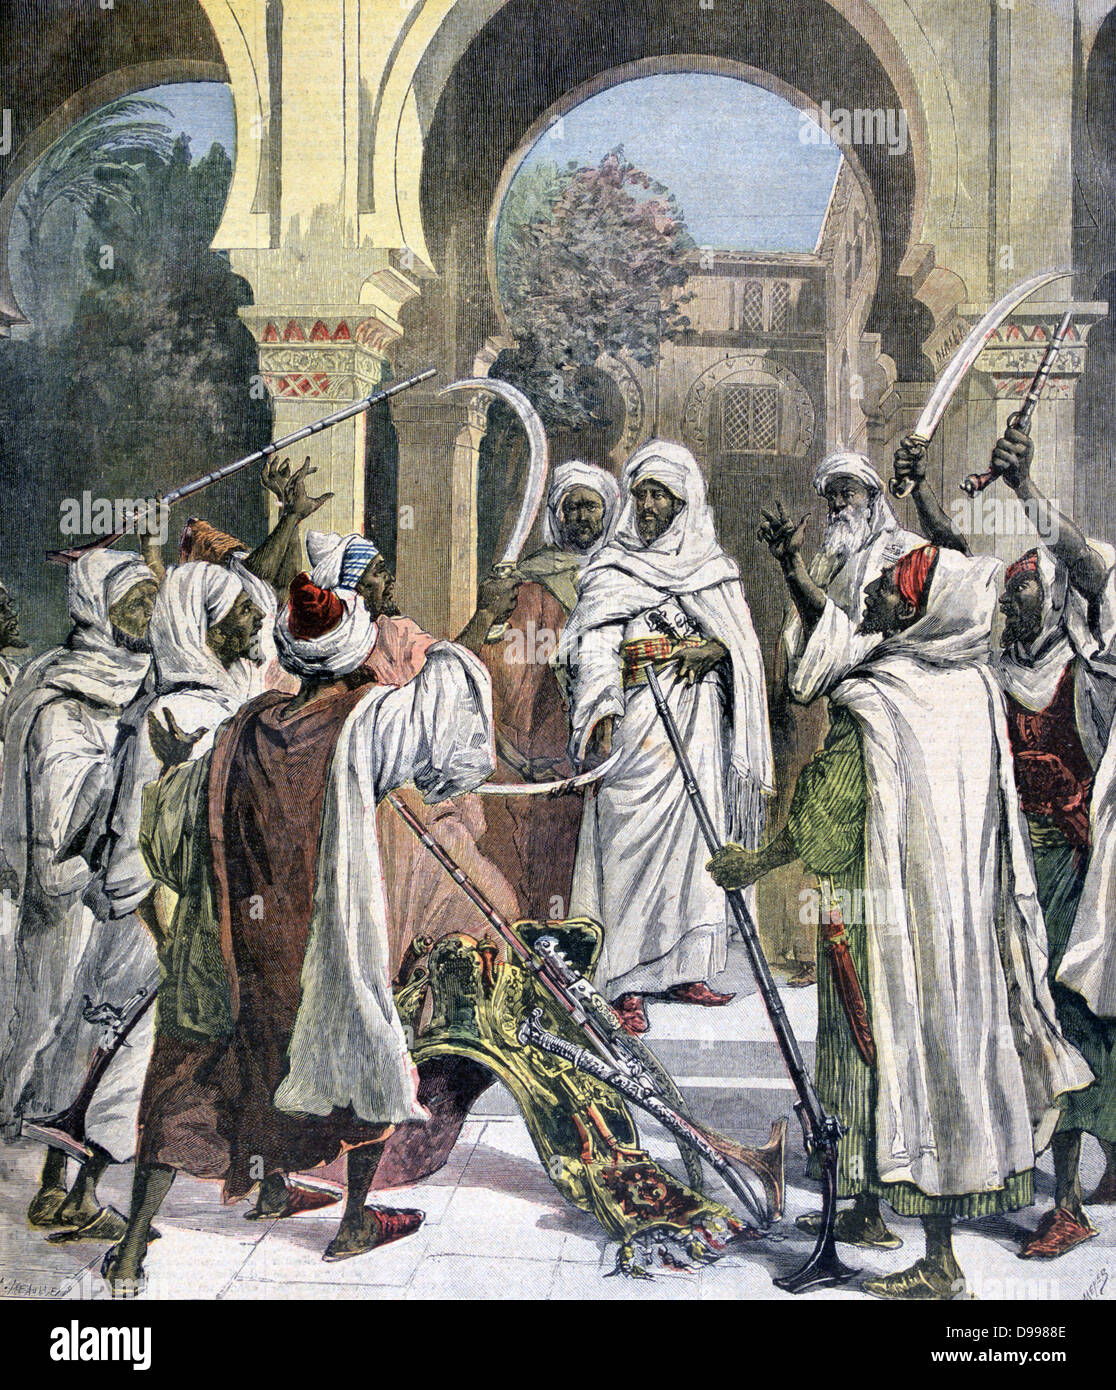 Los jefes tribales jurar lealtad al sultán de Marruecos. Moulay Hassan (1836-1894), sultán como Hassan I 1873-1894. Desde "Le Petit Journal", París 17 de agosto de 1892. África Foto de stock